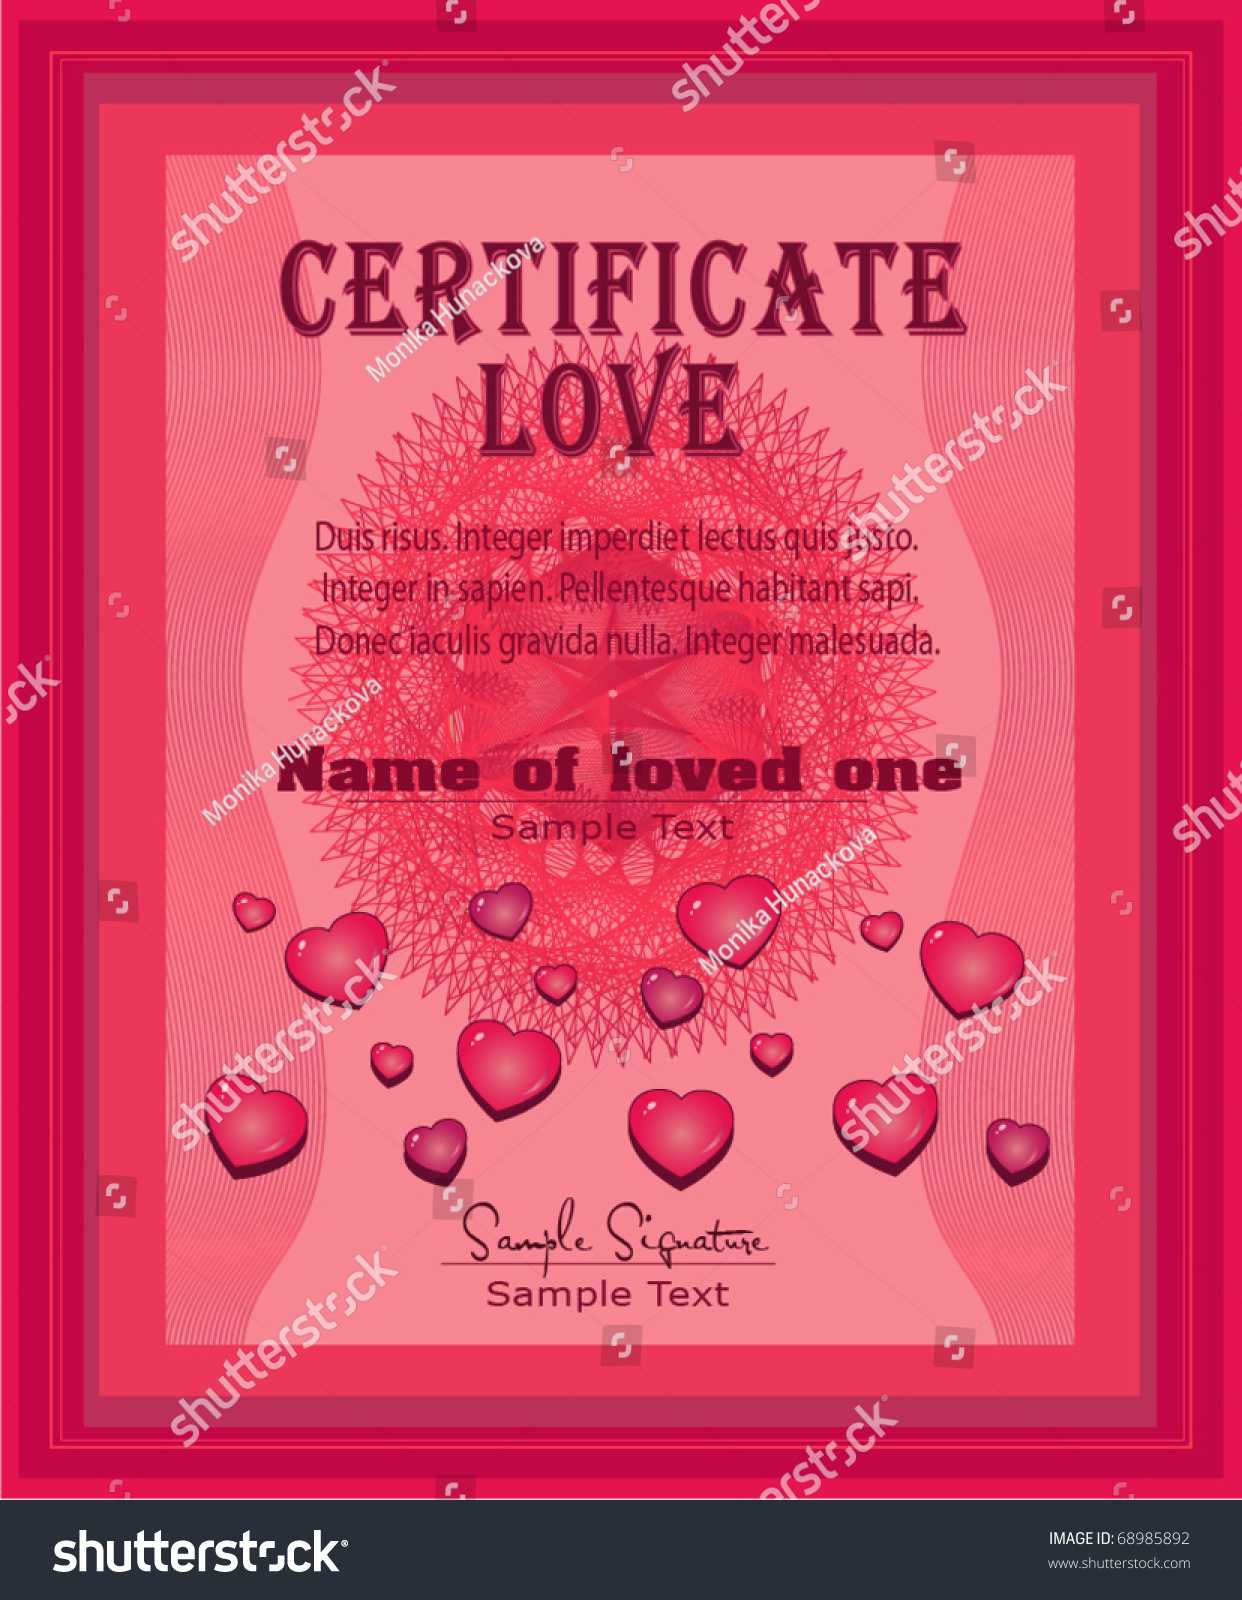 Certificate Love Vector Template Stock Vector (Royalty Free For Love Certificate Templates